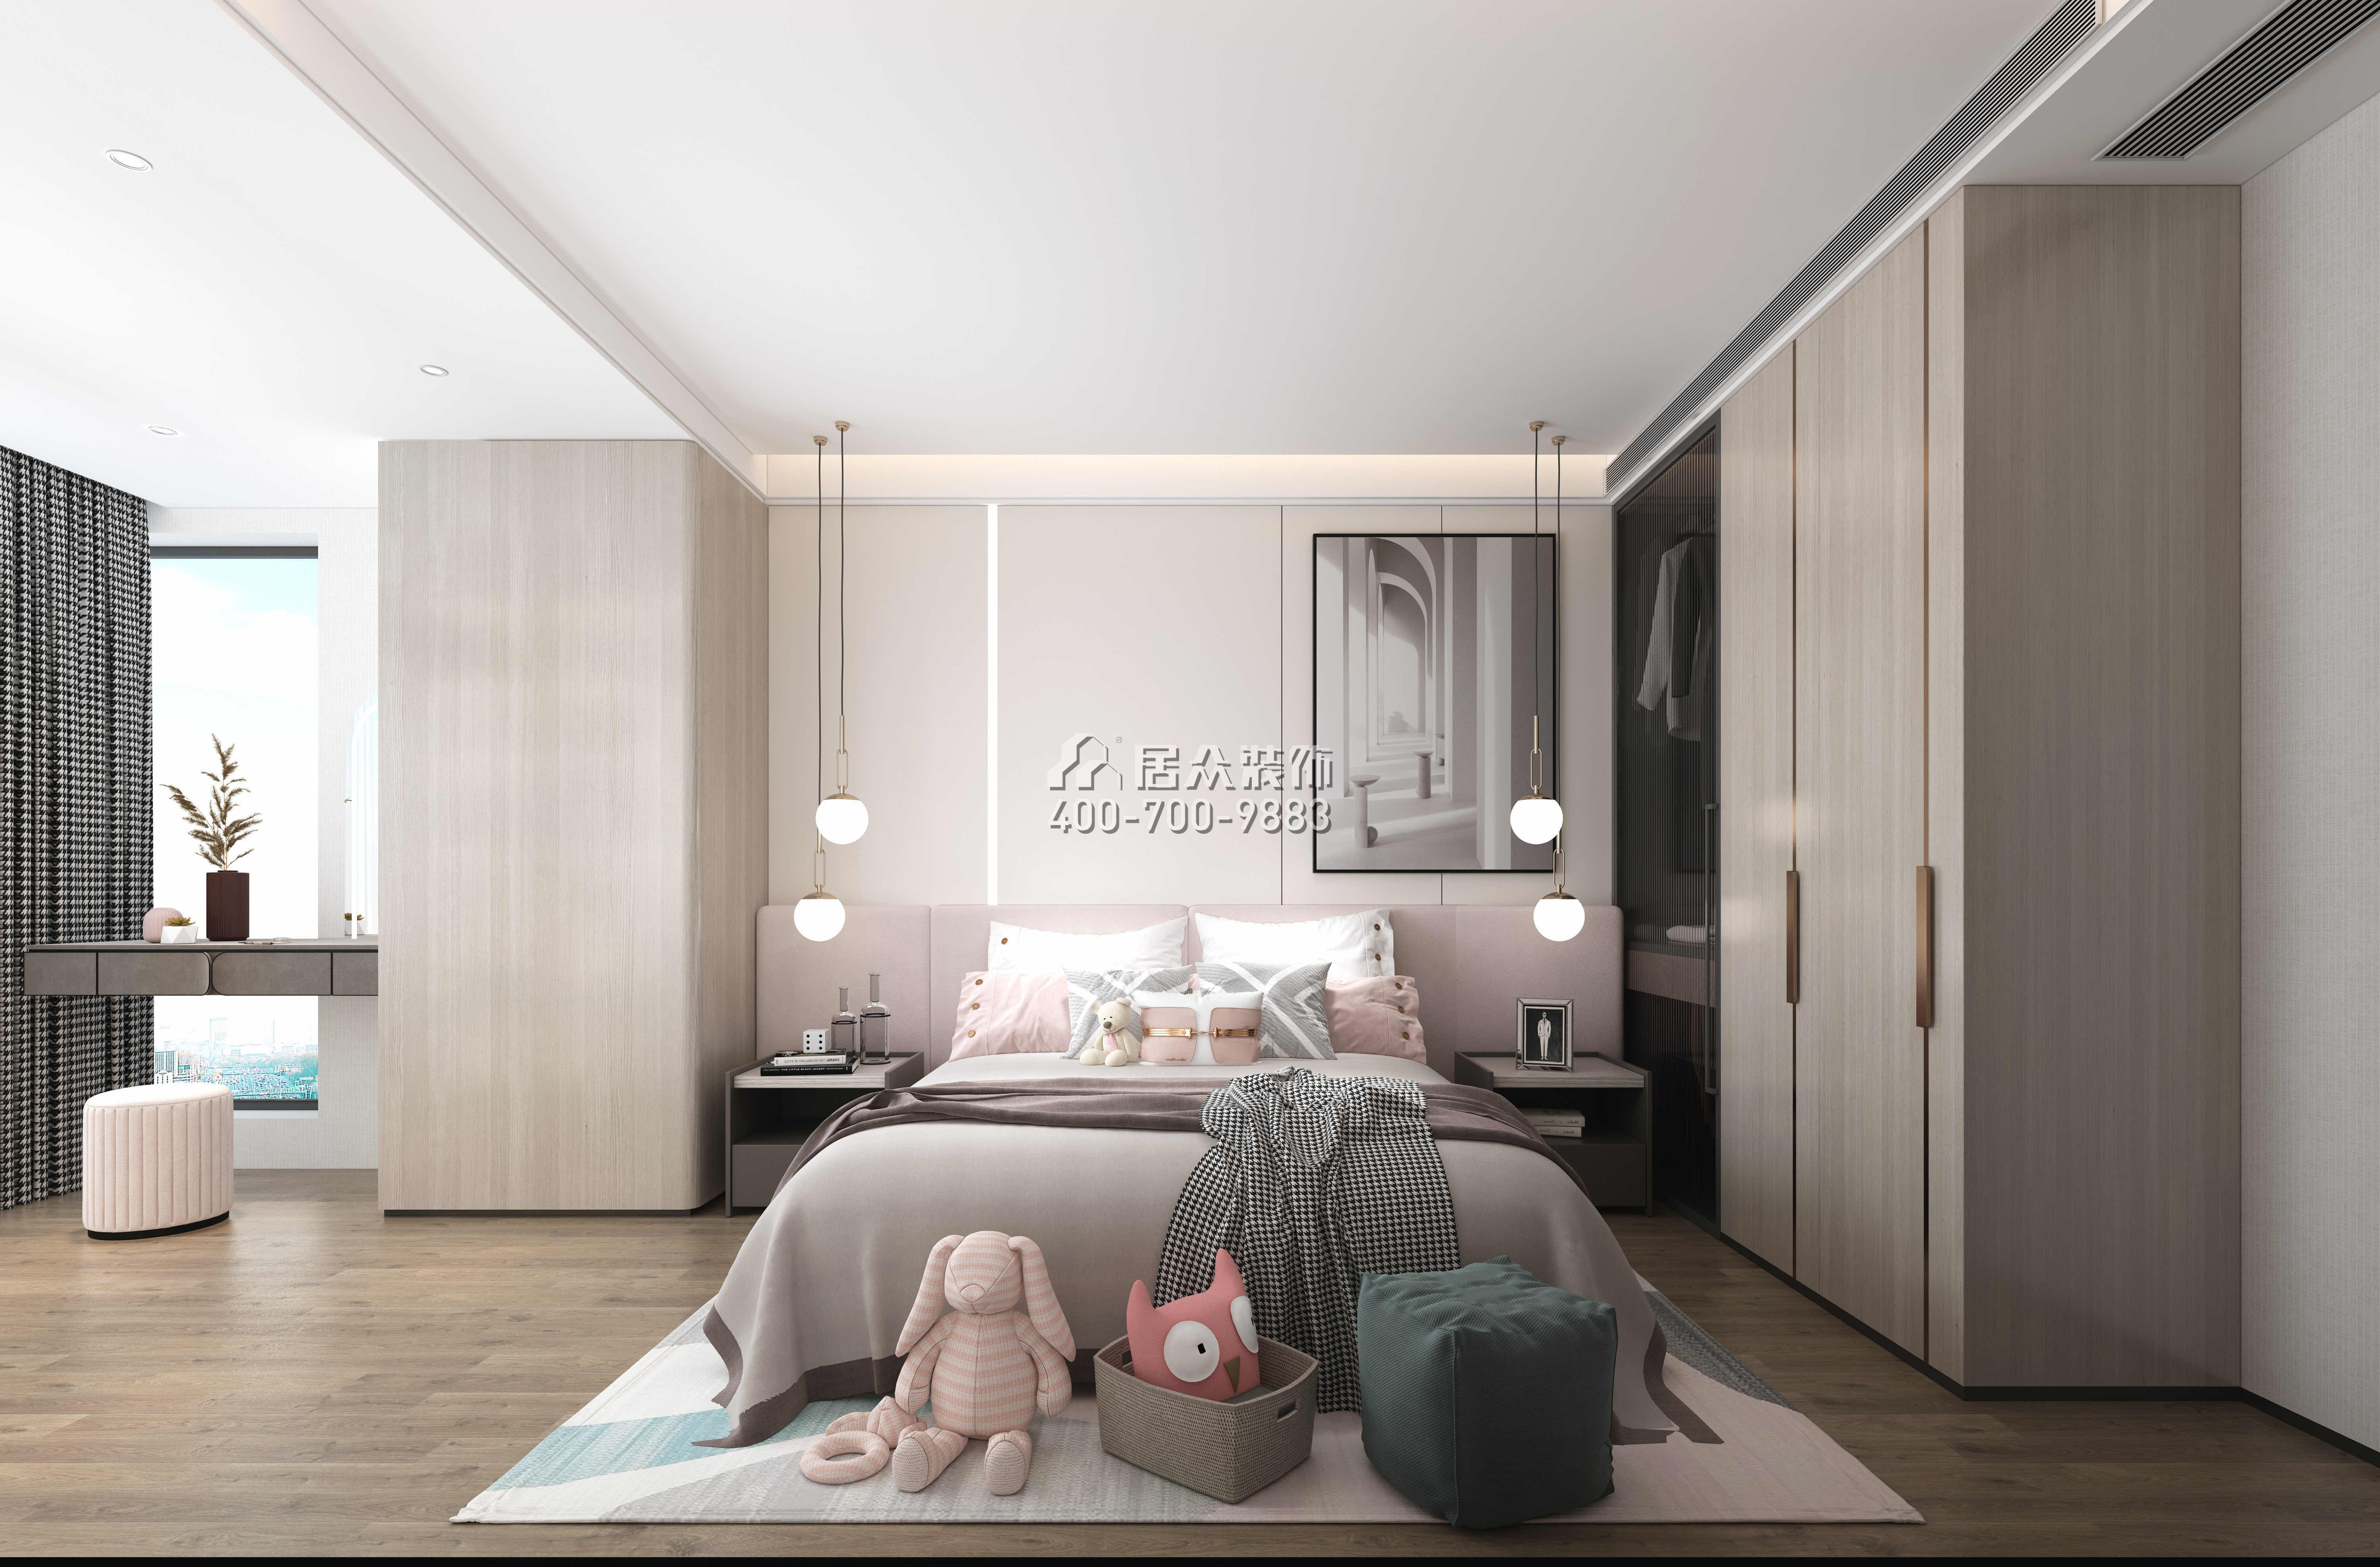 华润城润府198平方米现代简约风格平层户型卧室装修效果图